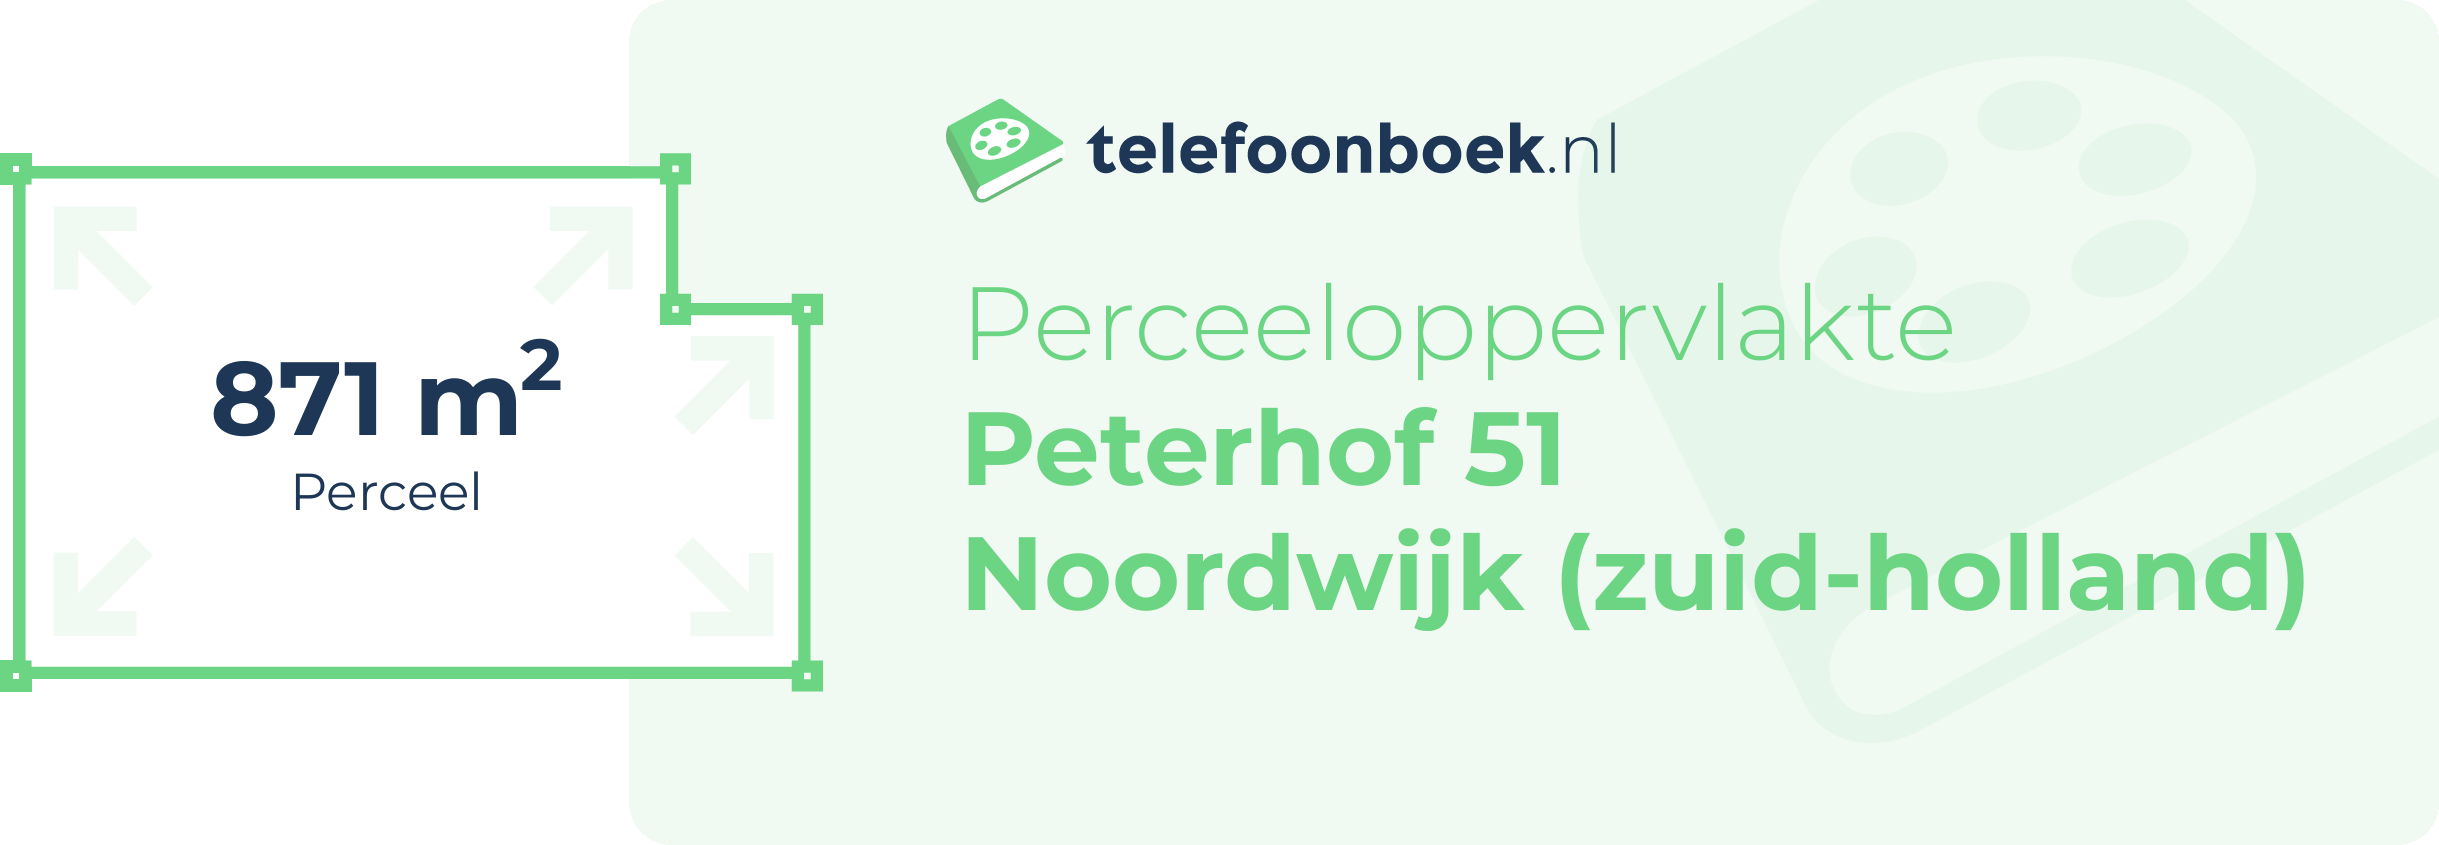 Perceeloppervlakte Peterhof 51 Noordwijk (Zuid-Holland)